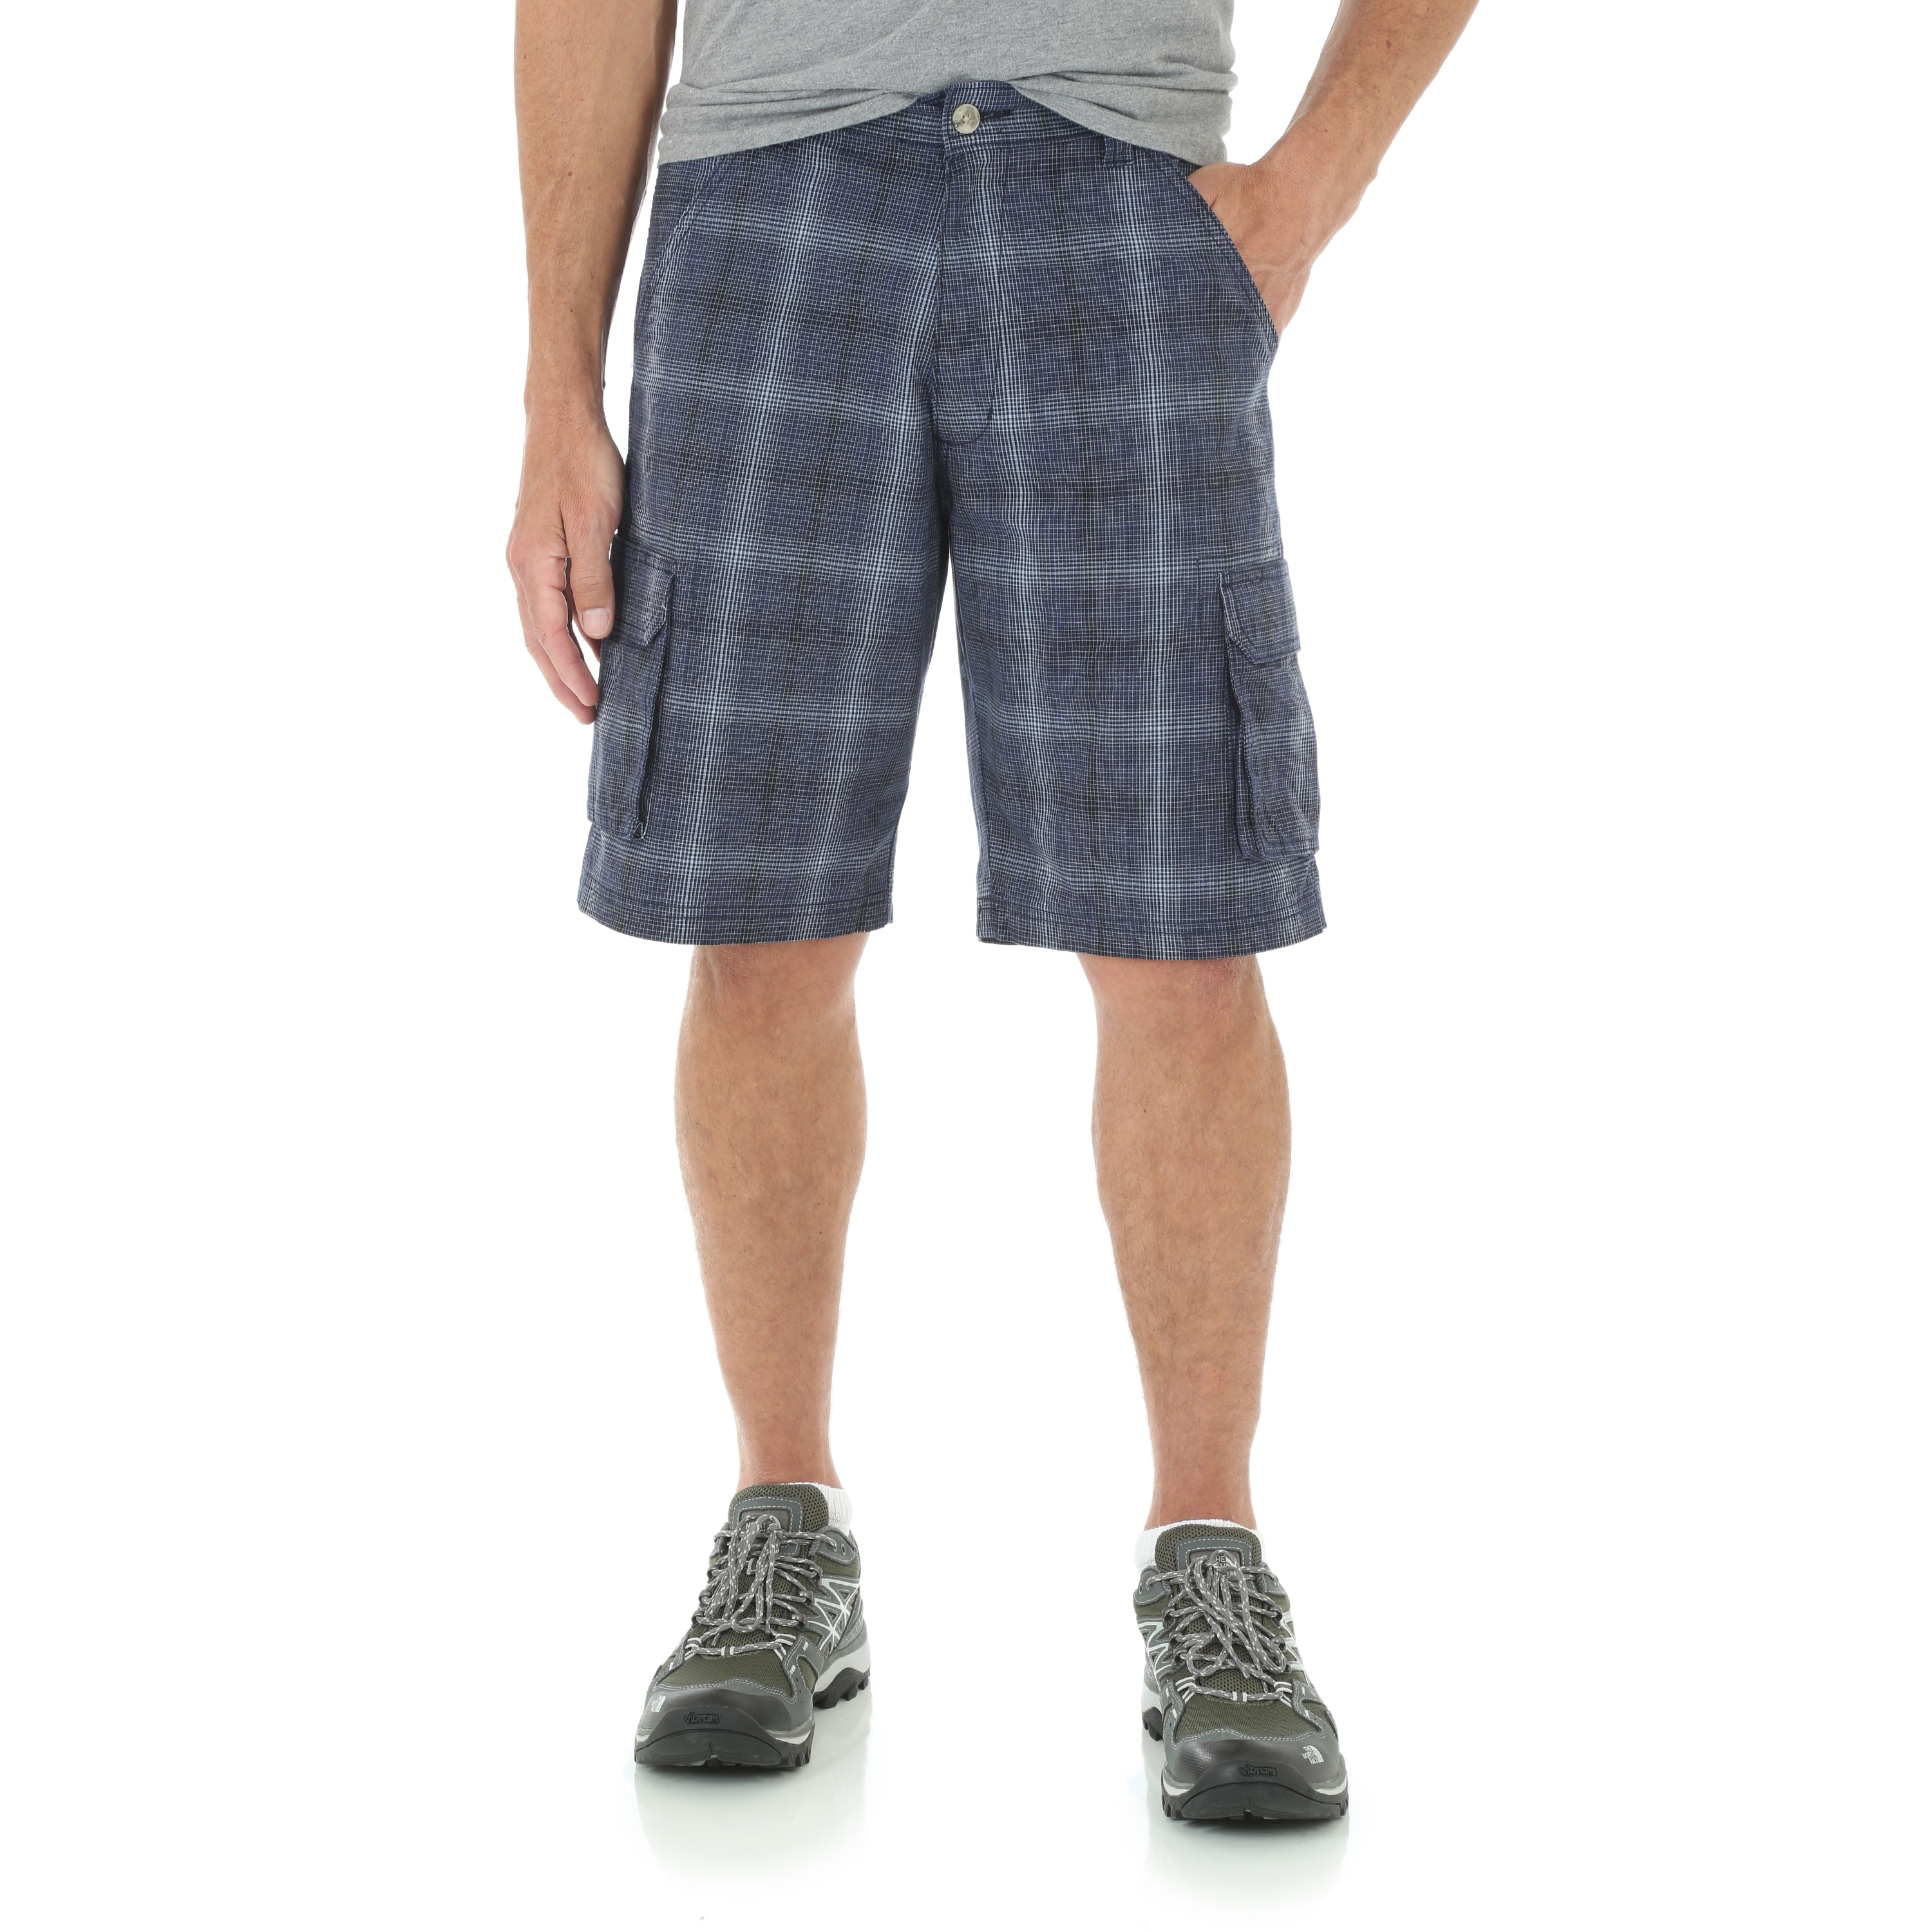 wrangler cargo jean shorts